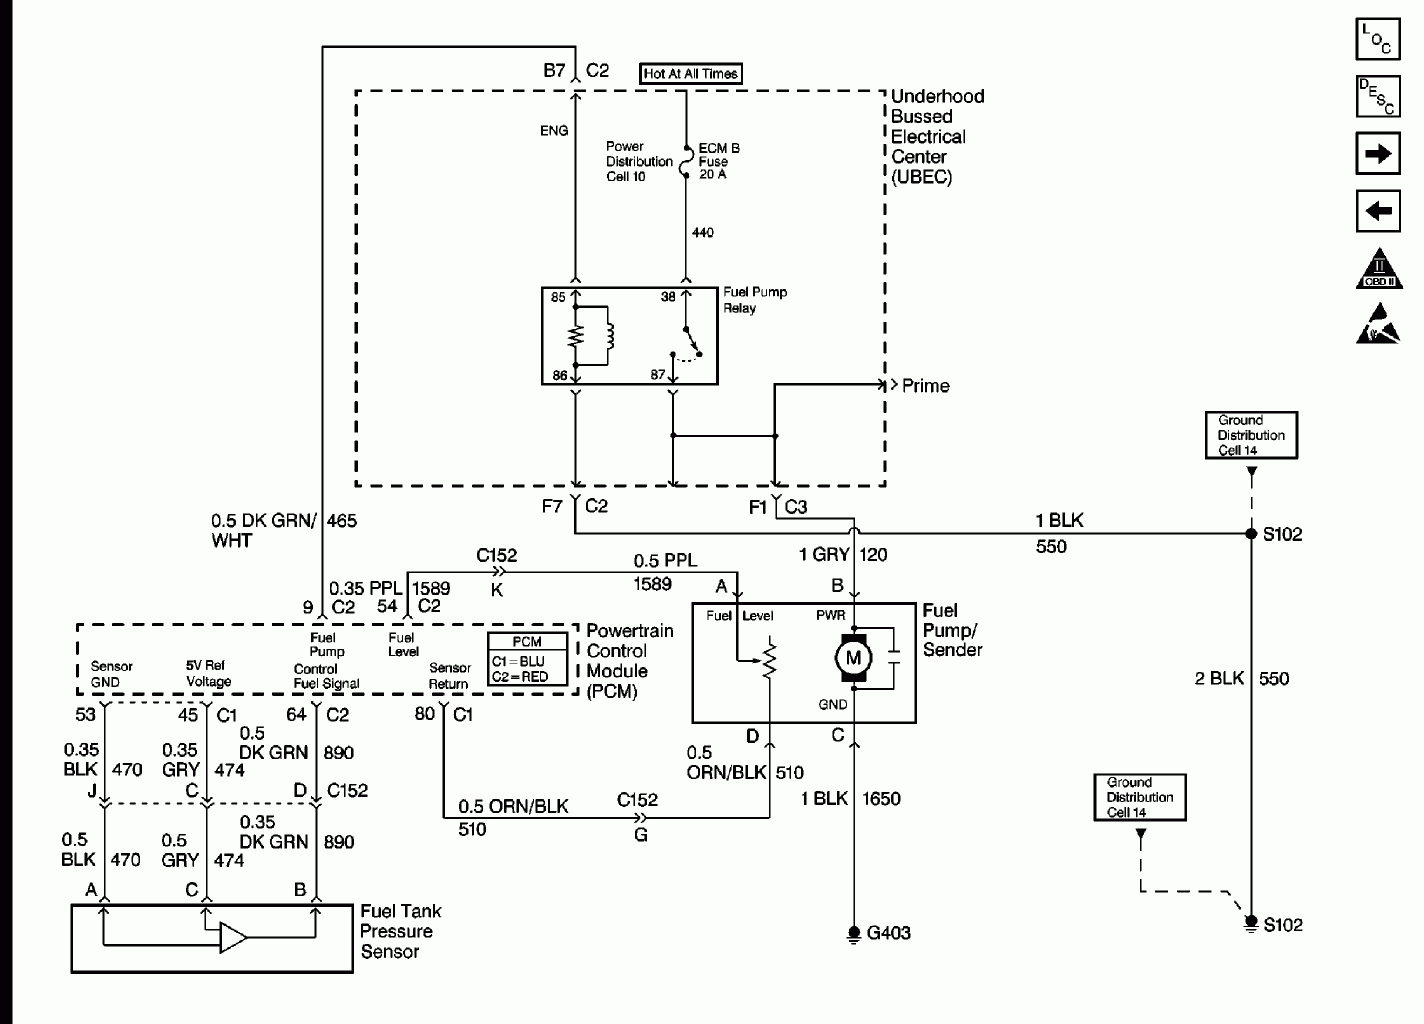 Need Fuel Pump Wiring Diagram Of 1999 Chevy Silverado